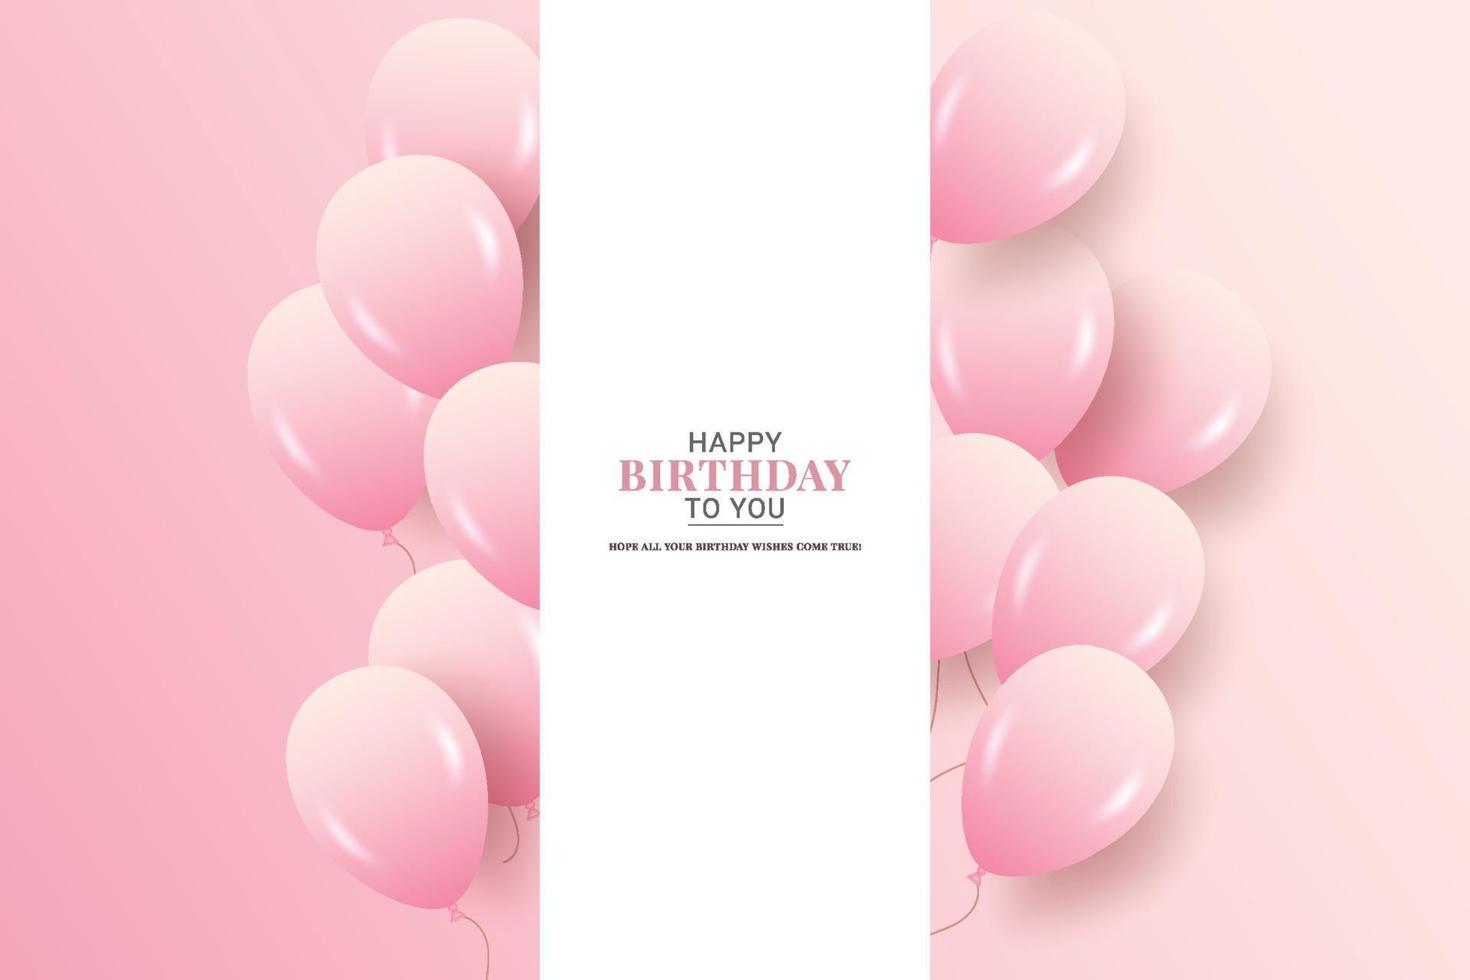 deseo de cumpleaños con globos rosados púrpuras realistas y fondo y texto rosados vector